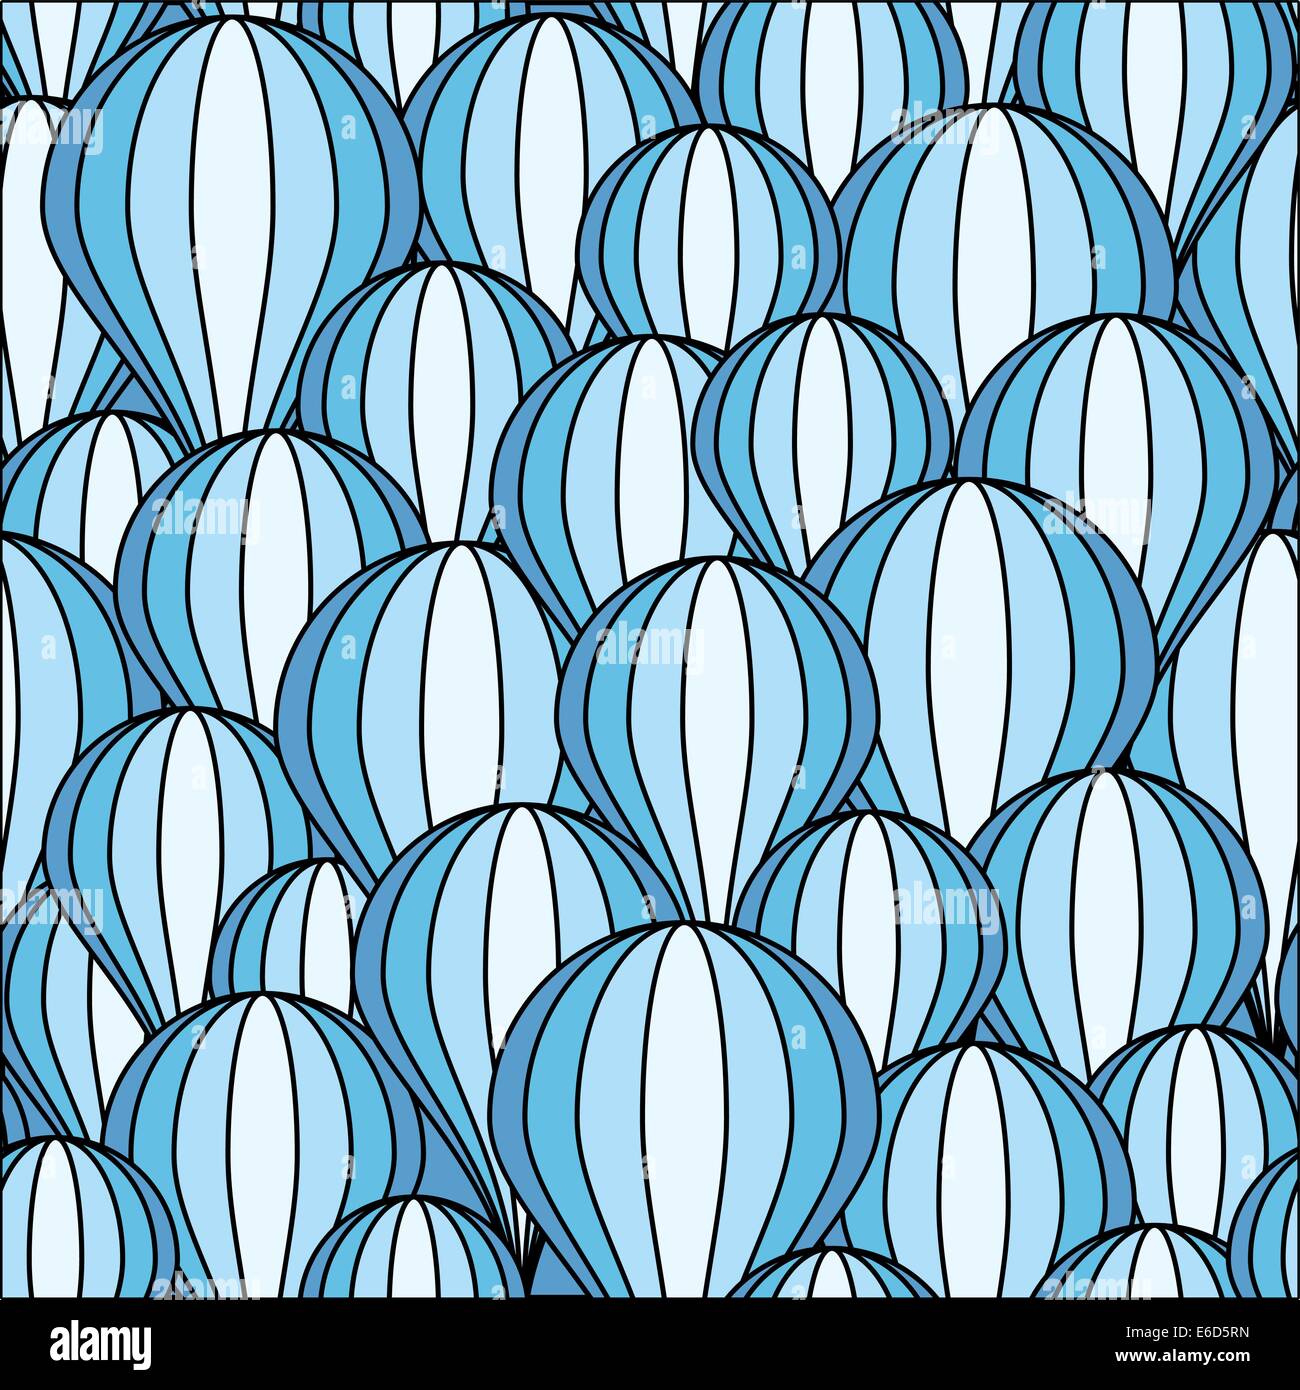 Editable vector seamless tile of blue balloons Stock Vector